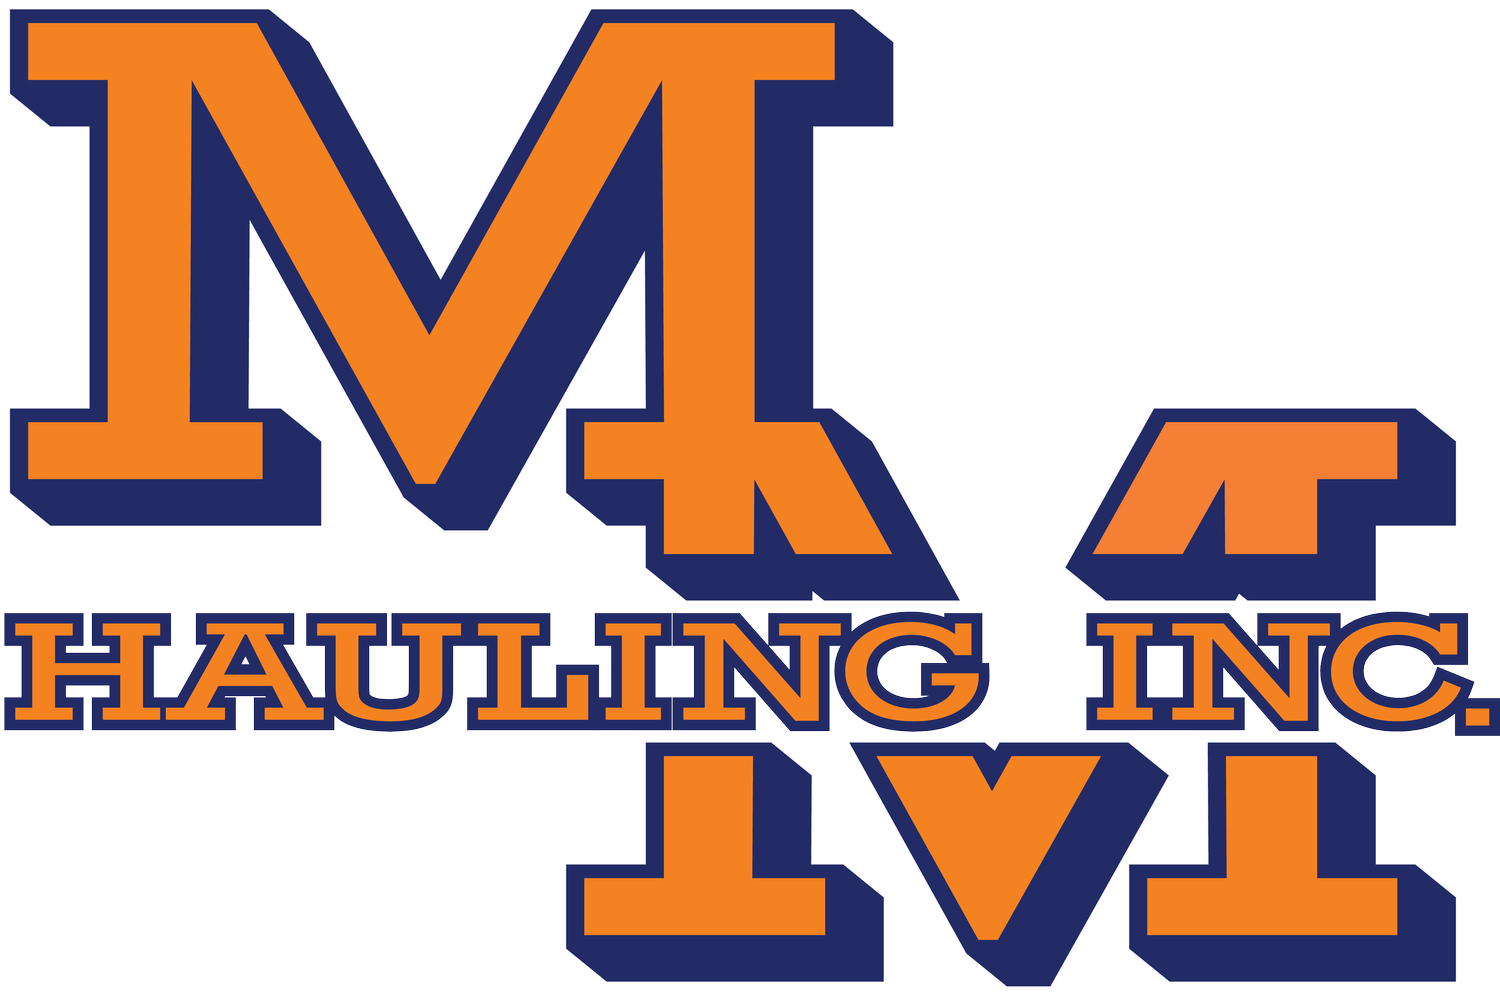 MM Hauling, Inc.